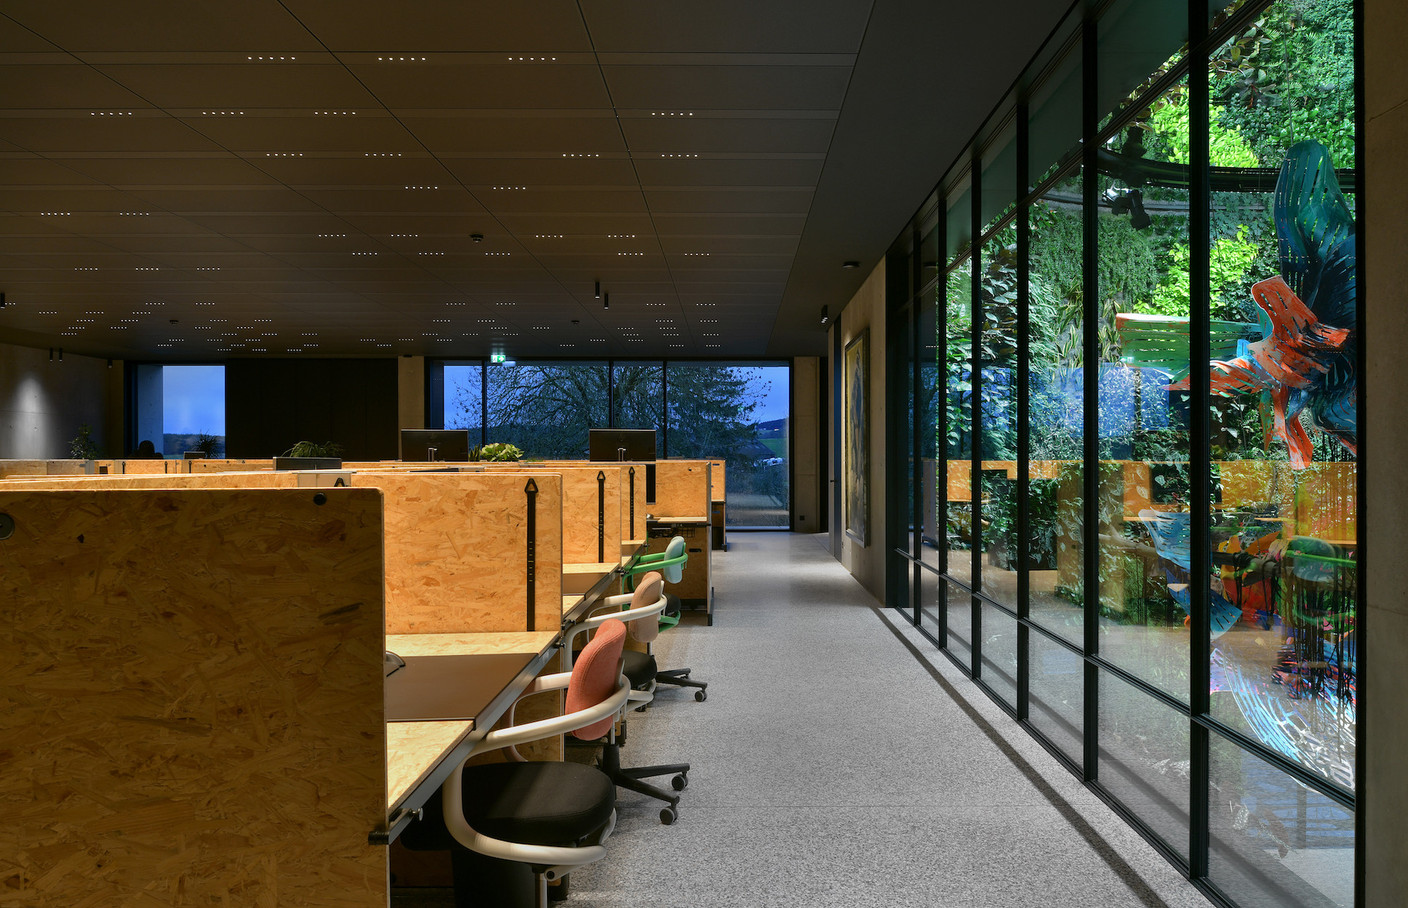 Les bureaux, aménagés en open spaces, disposent d’une vue vers le mur végétal. (Photo: Serge Brison)